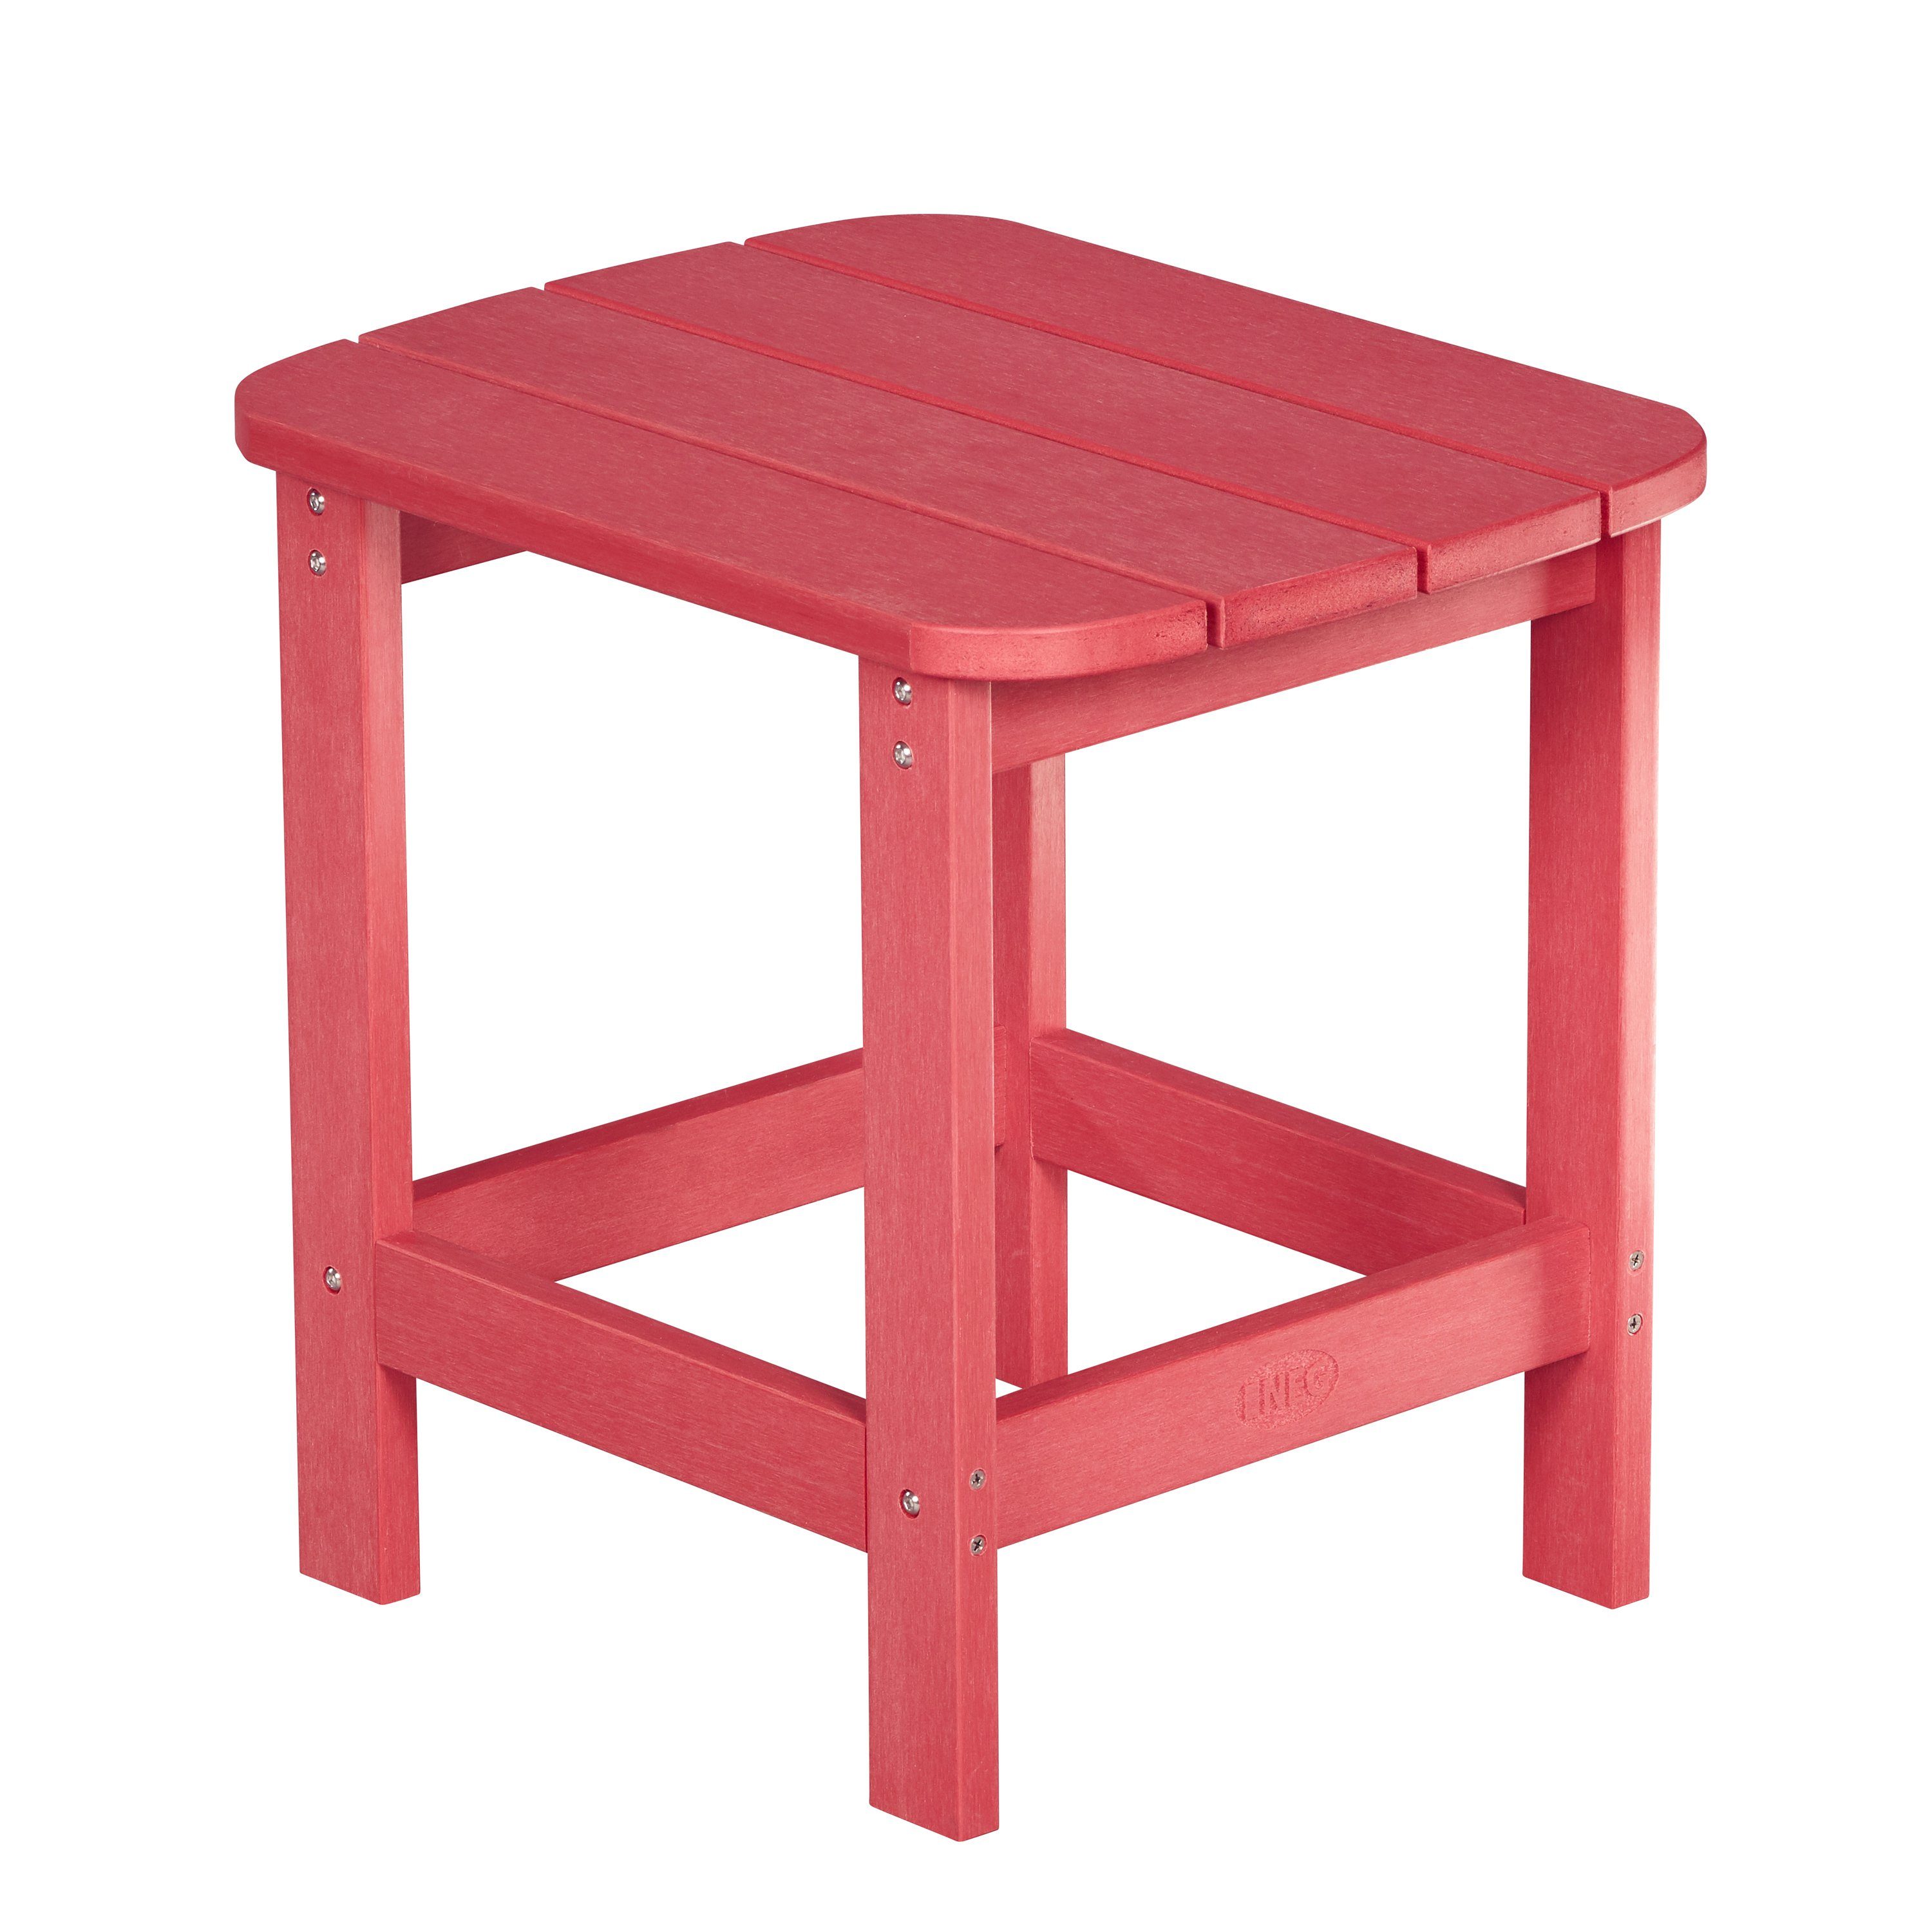 NEG Gartenstuhl NEG Adirondack Tisch/Beistelltisch MARCY rot